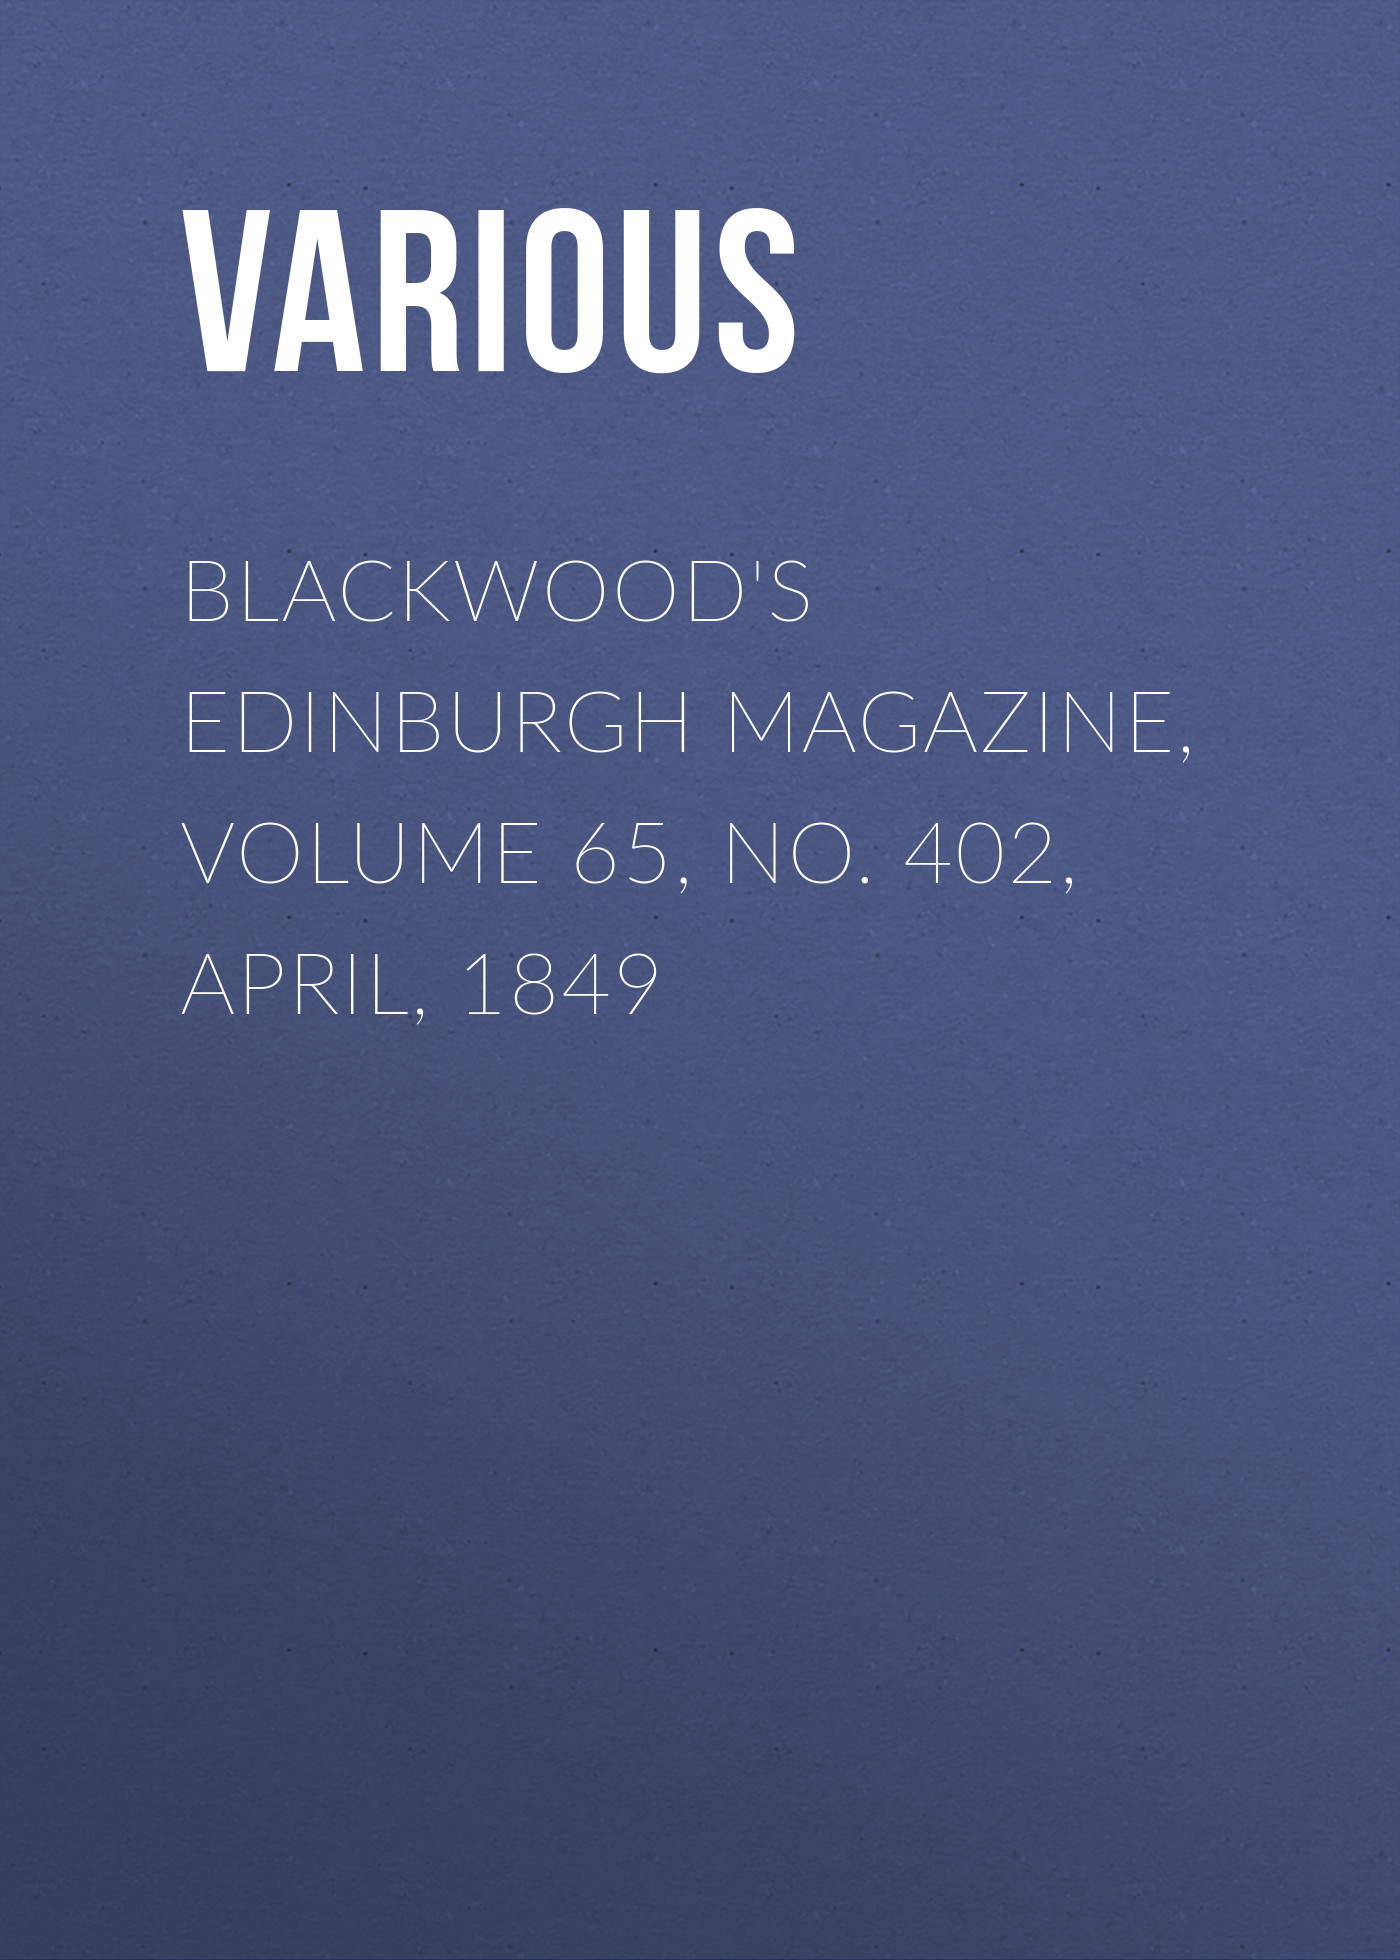 Книга Blackwood's Edinburgh Magazine, Volume 65, No. 402, April, 1849 из серии , созданная  Various, может относится к жанру Журналы, Зарубежная образовательная литература, Книги о Путешествиях. Стоимость электронной книги Blackwood's Edinburgh Magazine, Volume 65, No. 402, April, 1849 с идентификатором 25569535 составляет 0 руб.